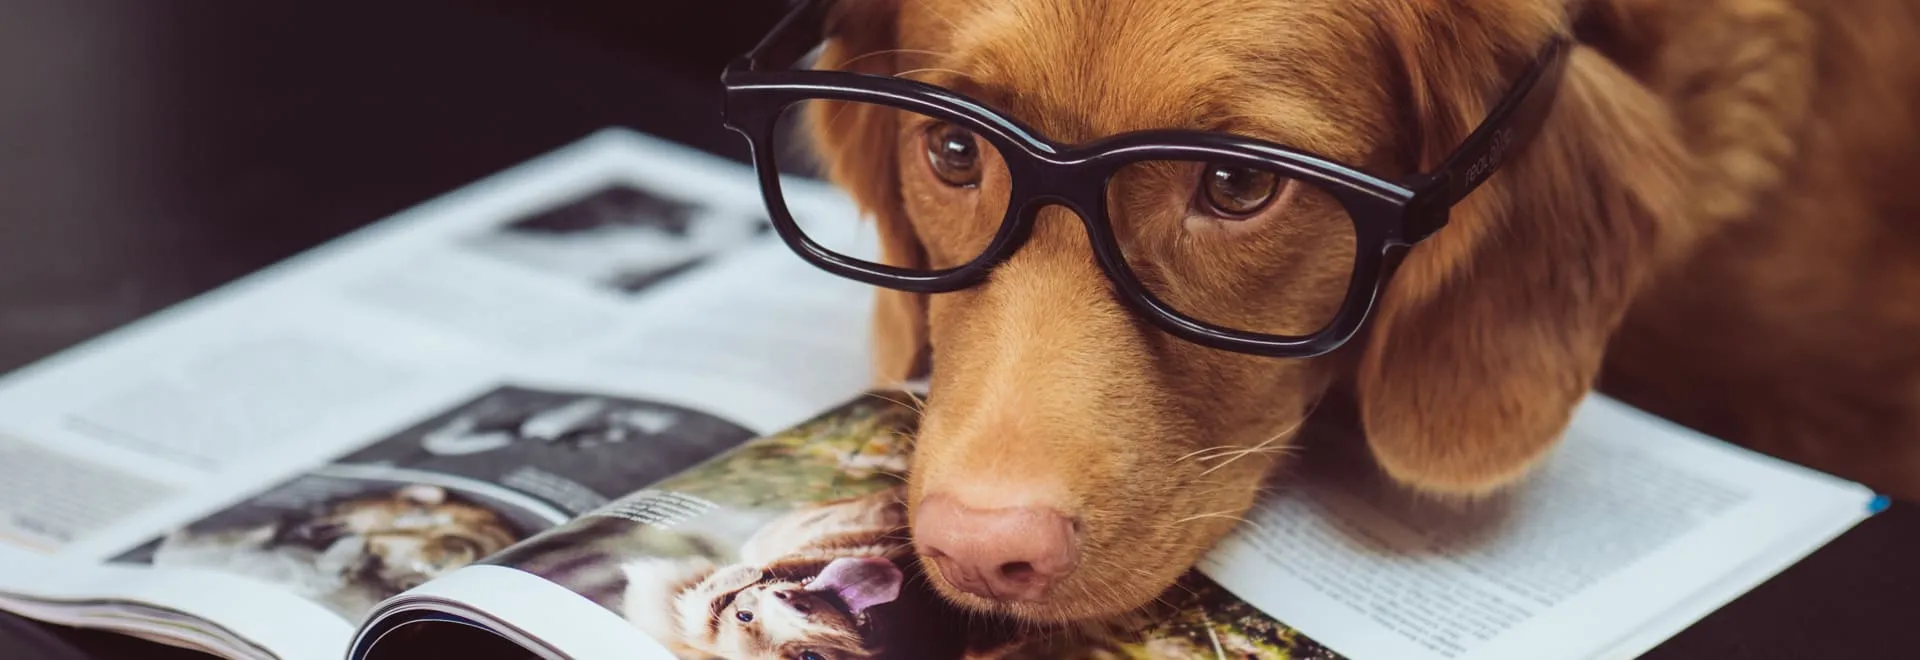 Hund im Büro mit Brille auf